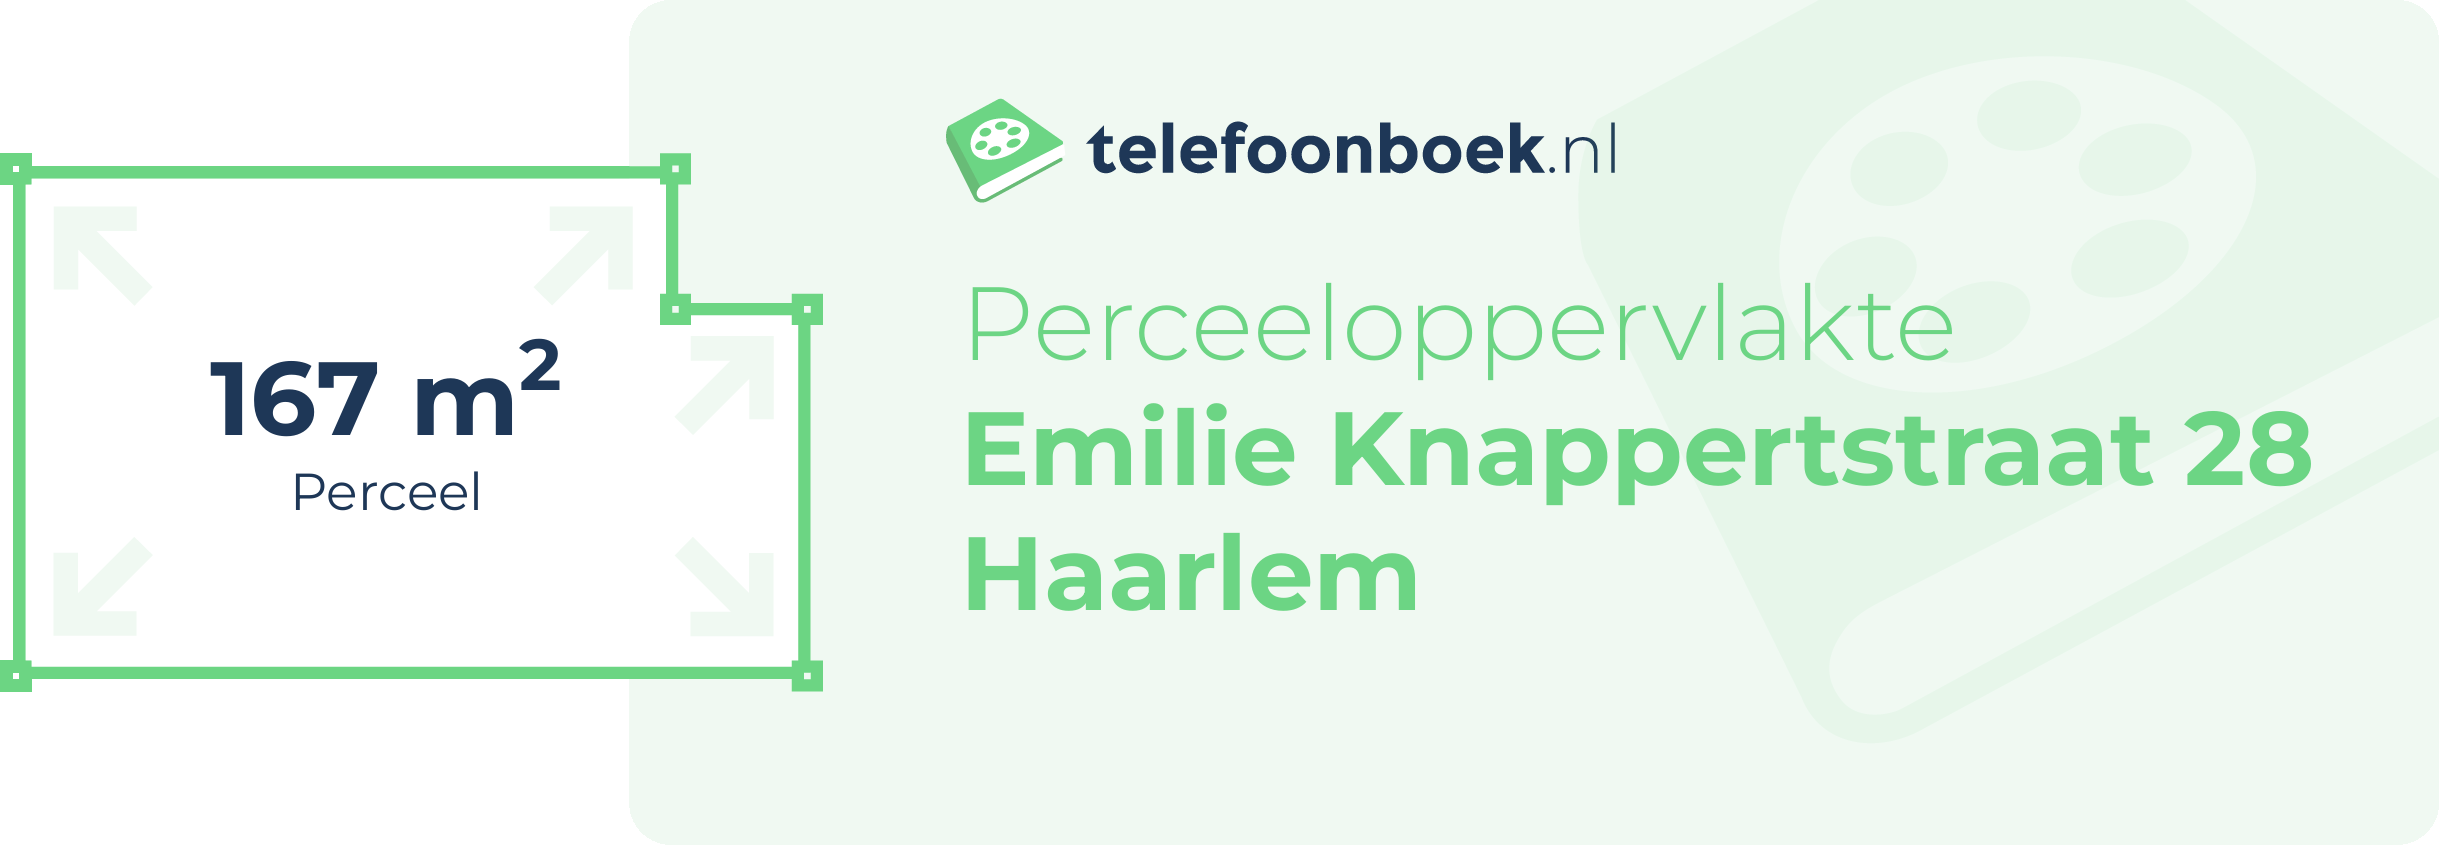 Perceeloppervlakte Emilie Knappertstraat 28 Haarlem